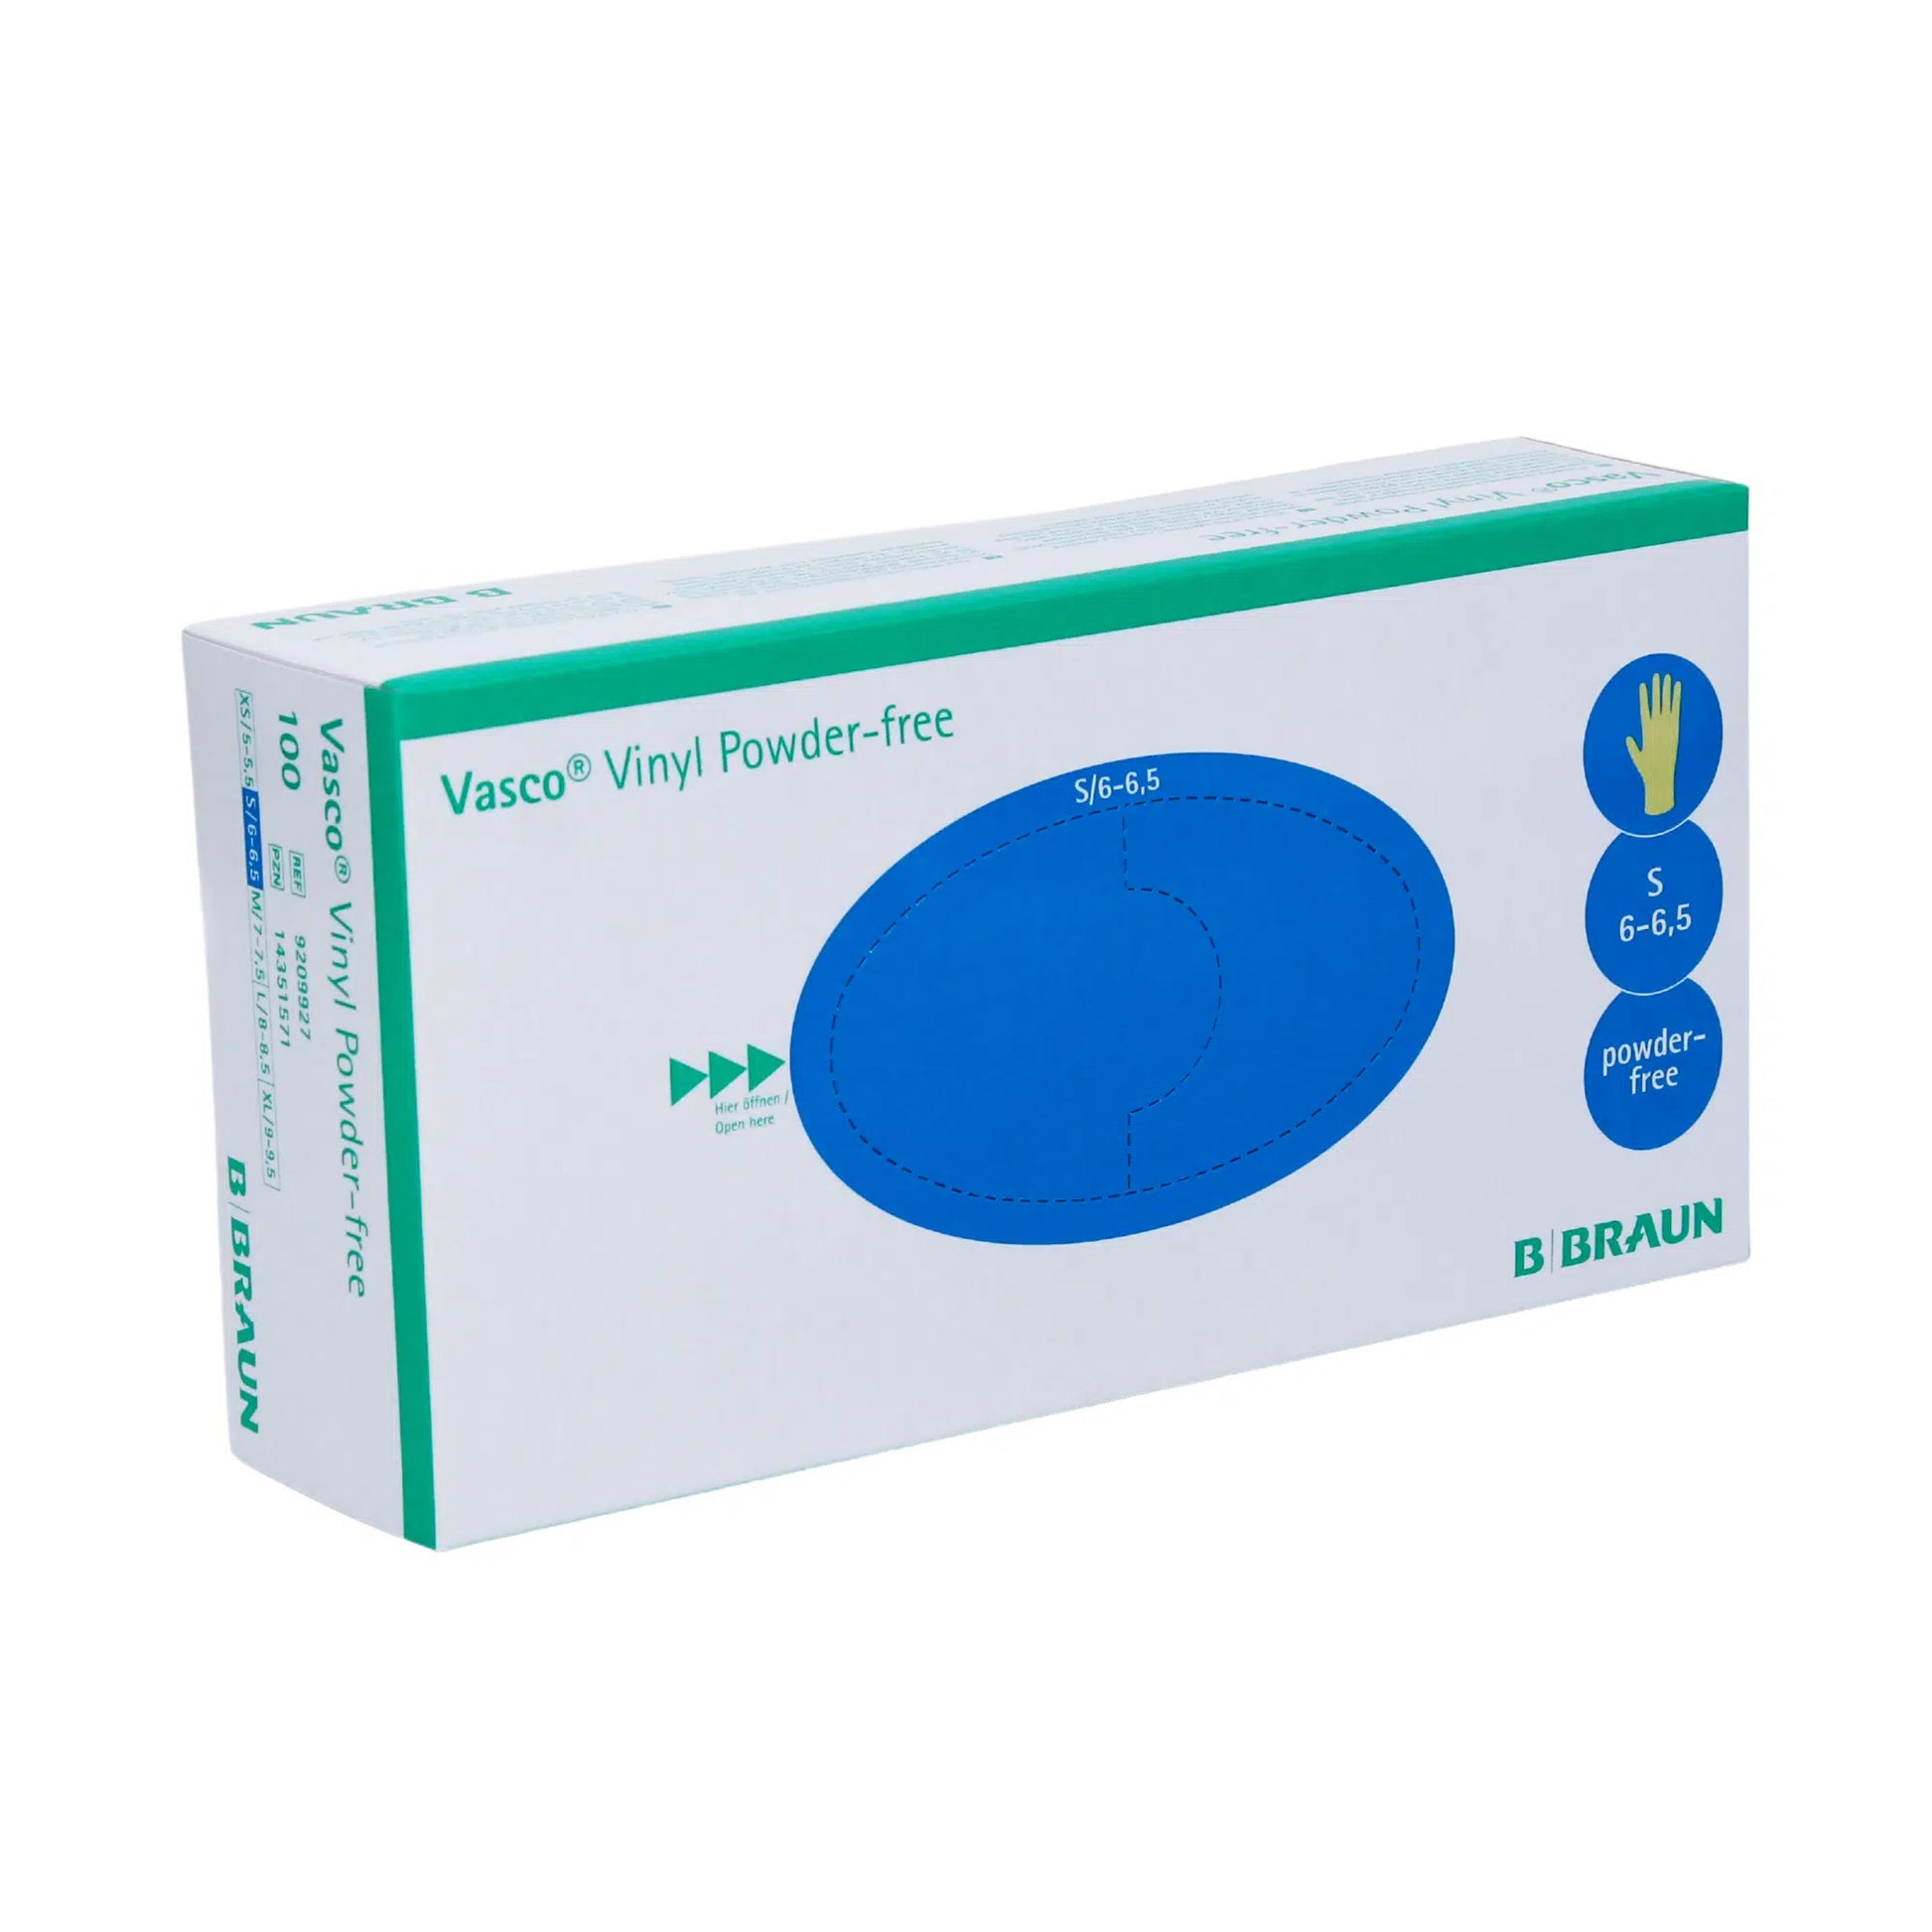 Eine Schachtel B. Braun Vasco® Vinyl Puderfreie Einmalhandschuhe von B. Braun Melsungen AG, hauptsächlich weiß mit blauen und grünen Akzenten. Die Schachtel gibt Handschuhgröße 6,5-6,5s an.